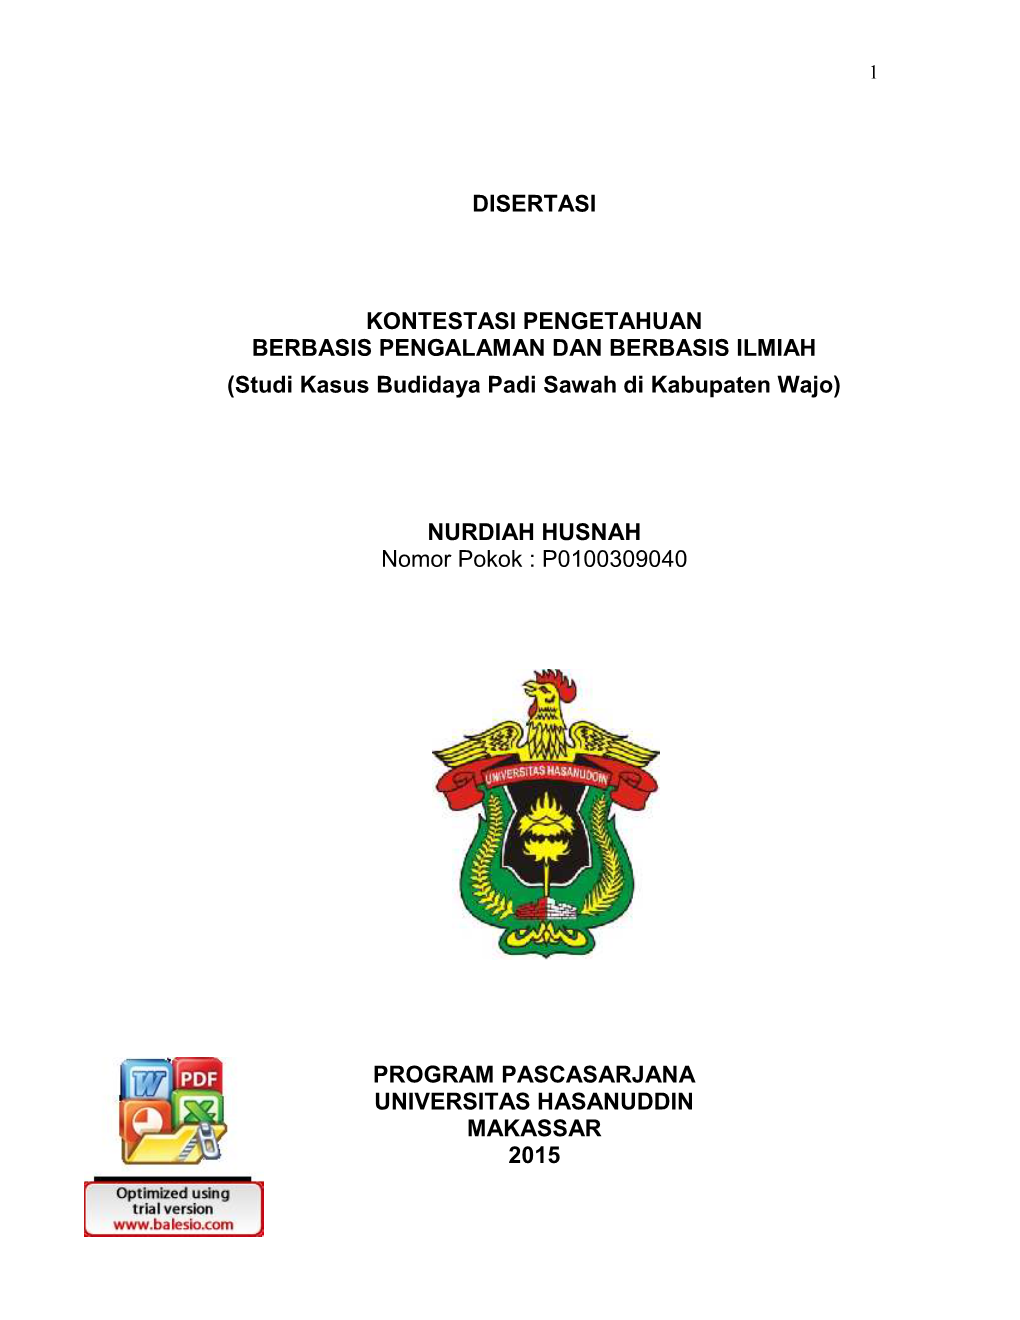 Studi Kasus Budidaya Padi Sawah Di Kabupaten Wajo)